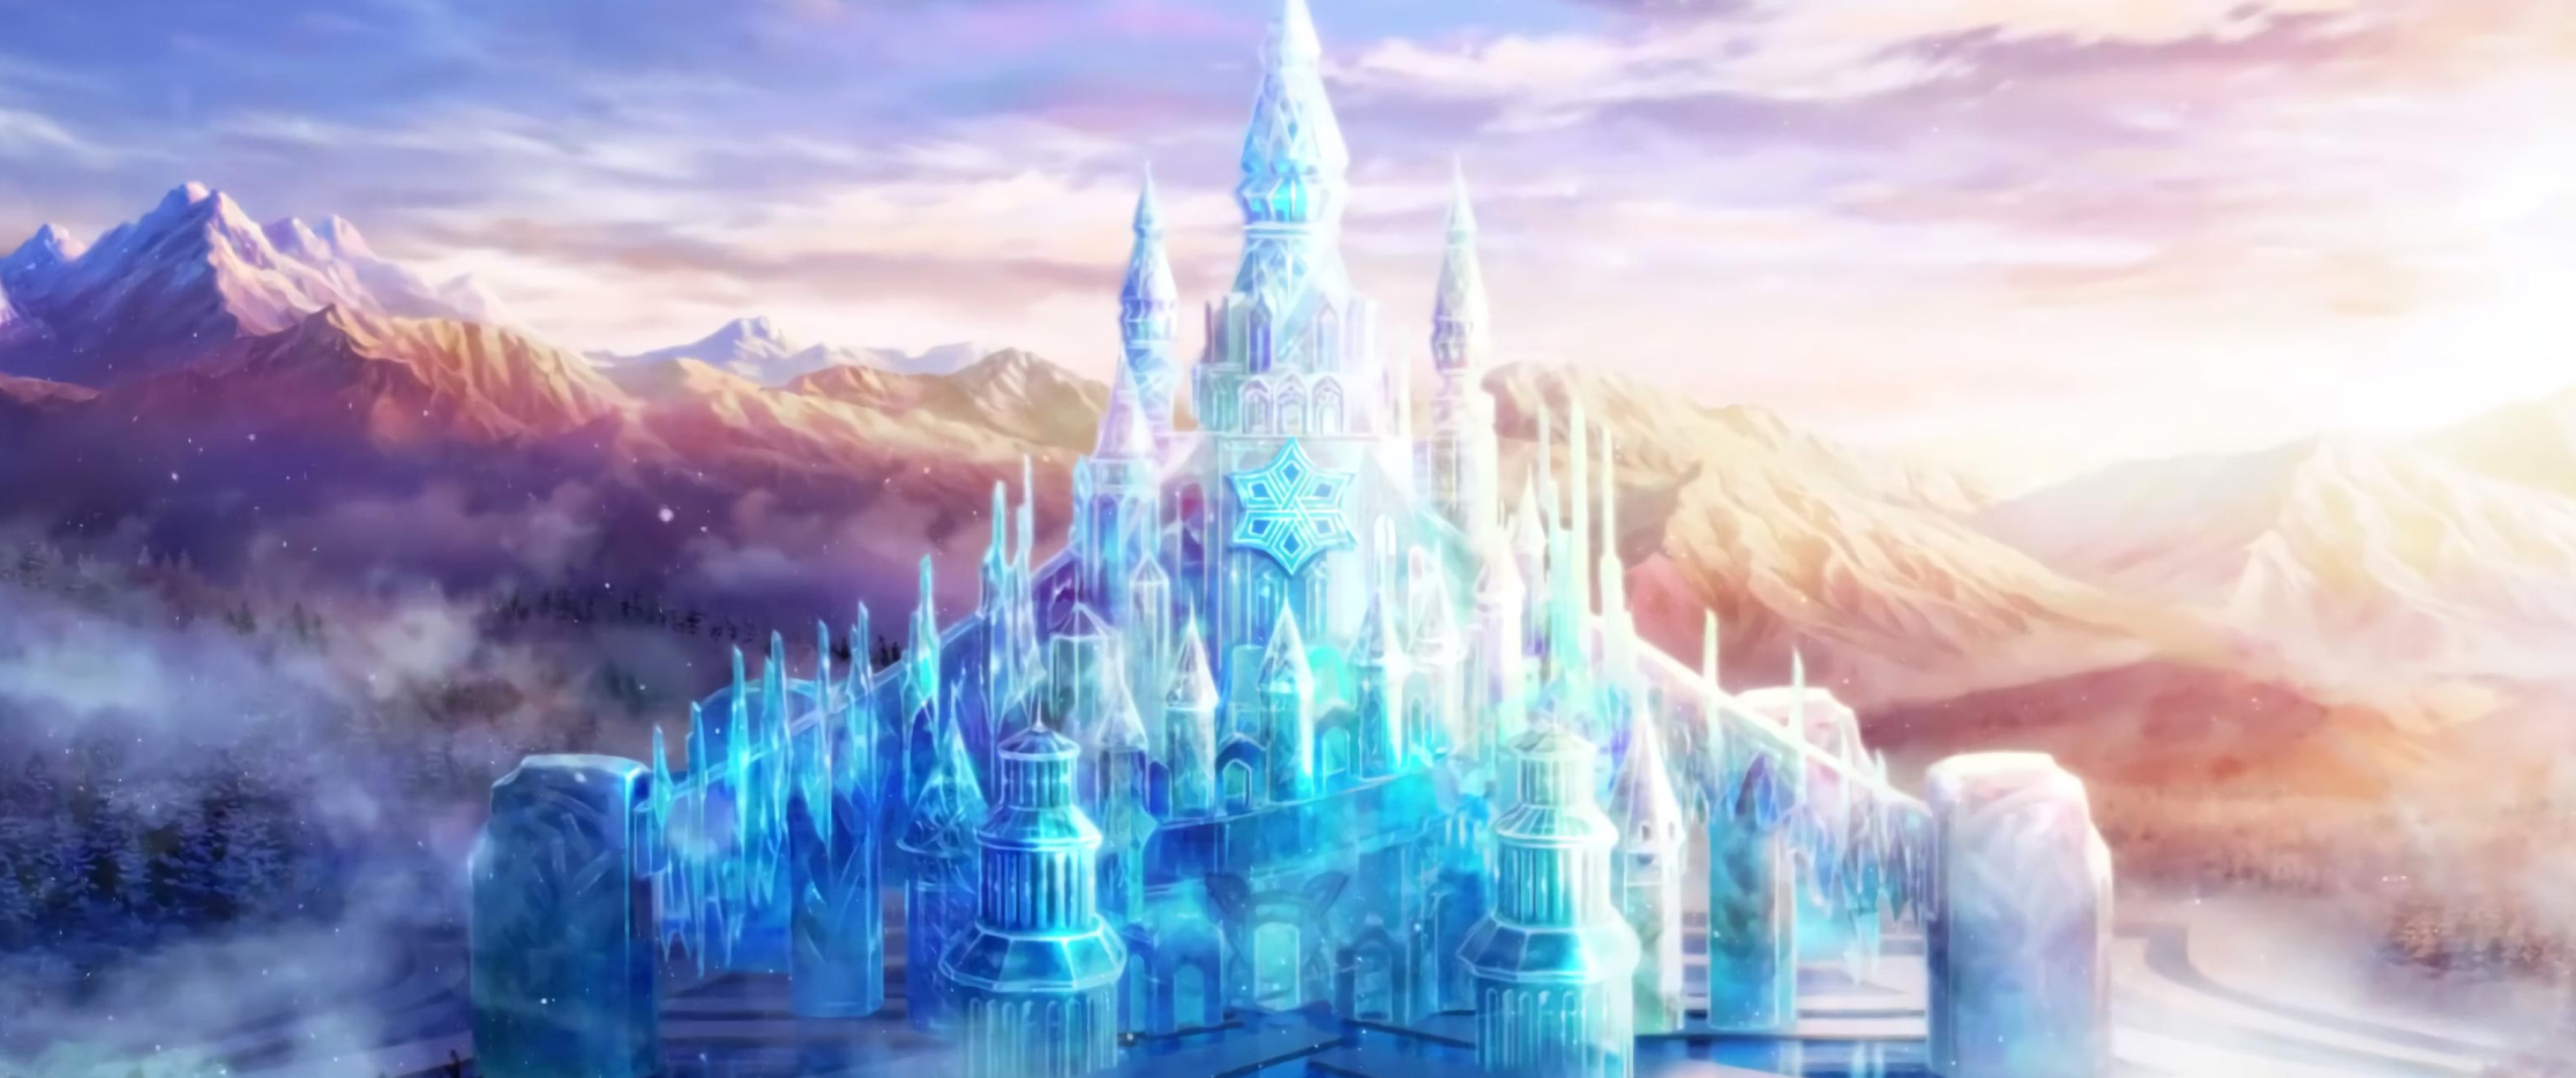 Frozen, Ice Castle Wallpaper, 3440x1440 Dual Screen Desktop